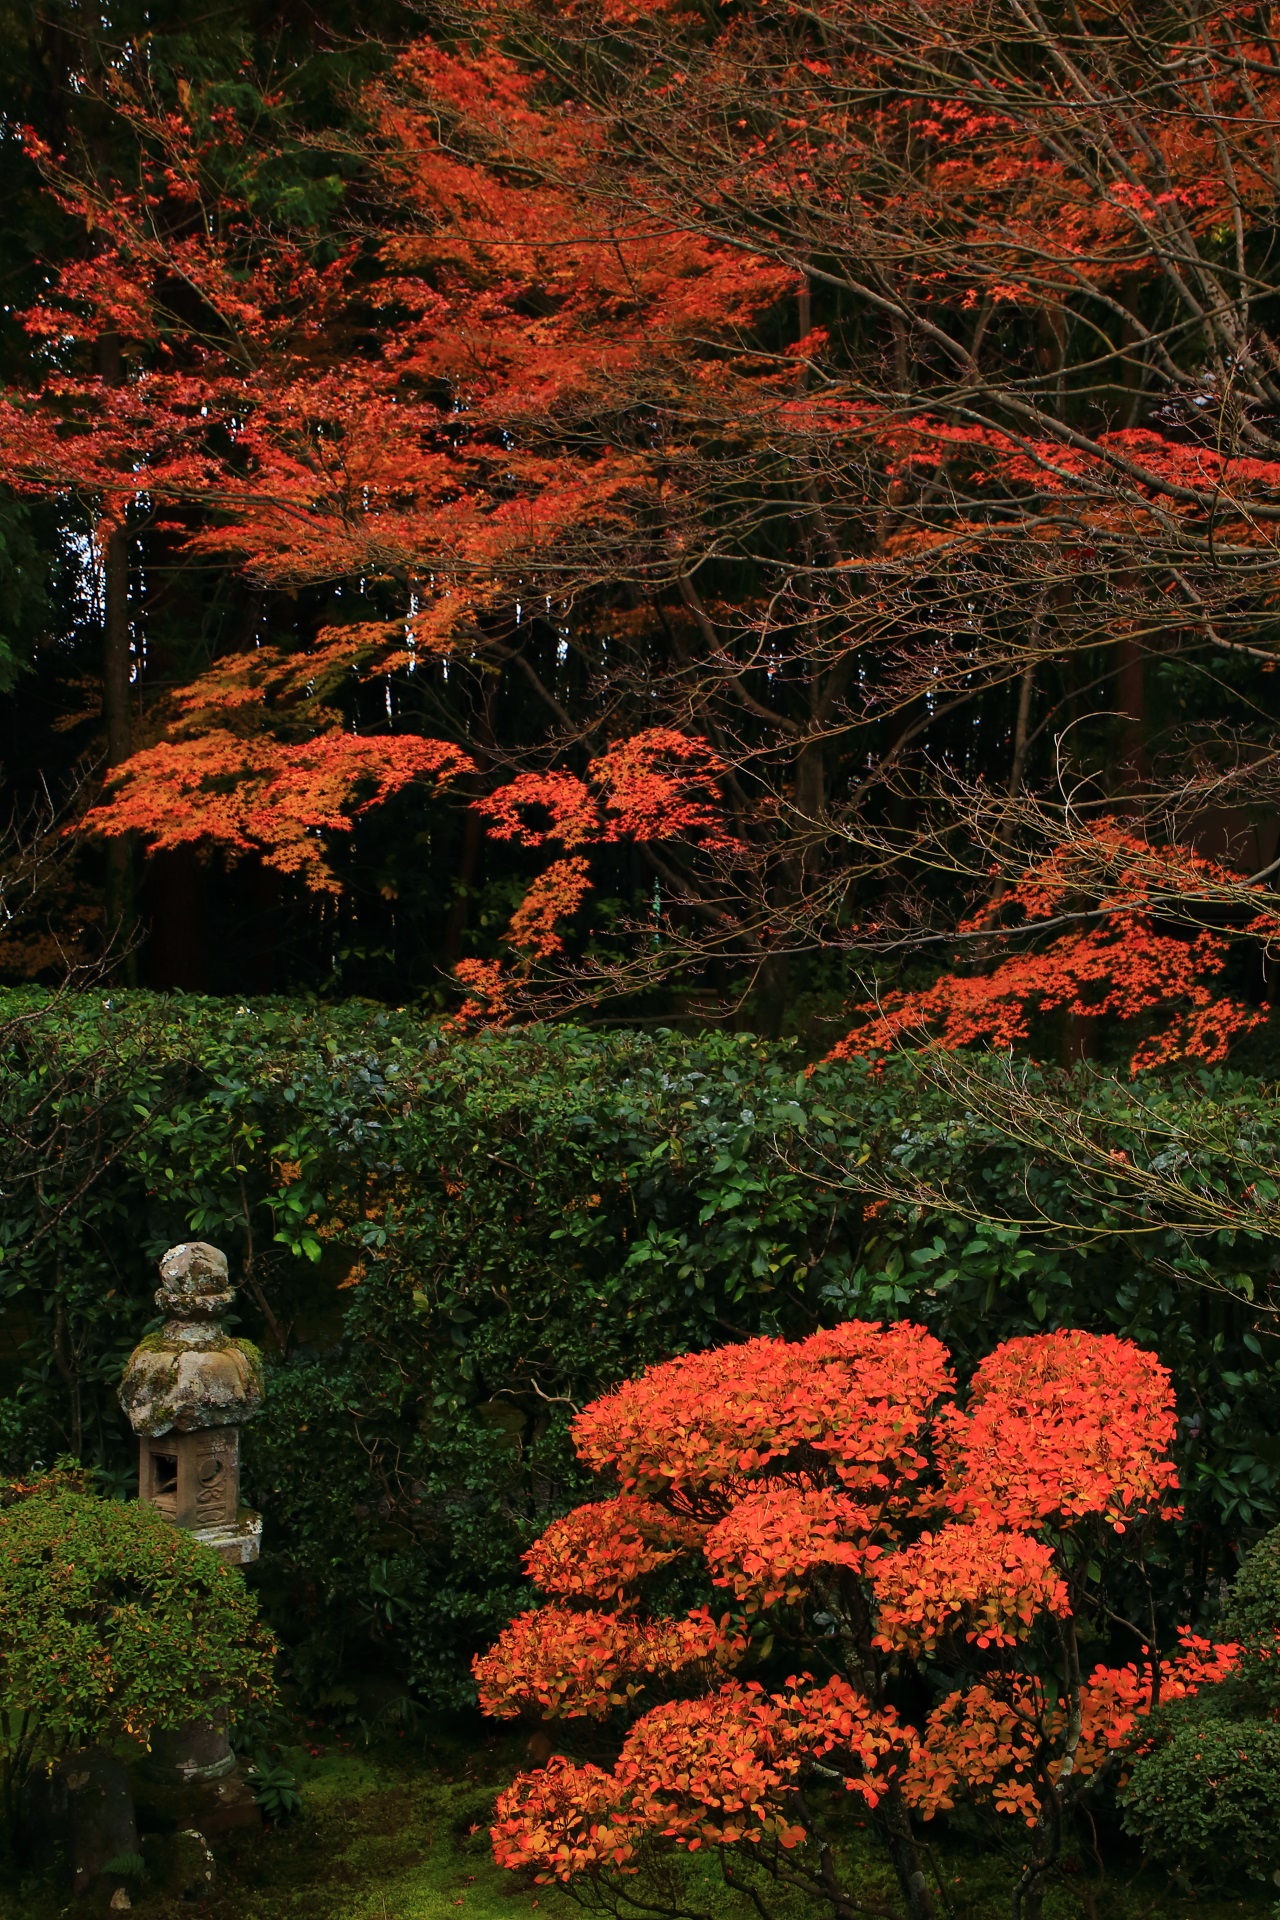 桂春院の深い緑の中で浮かび上がるような楓の紅葉とツツジの紅葉